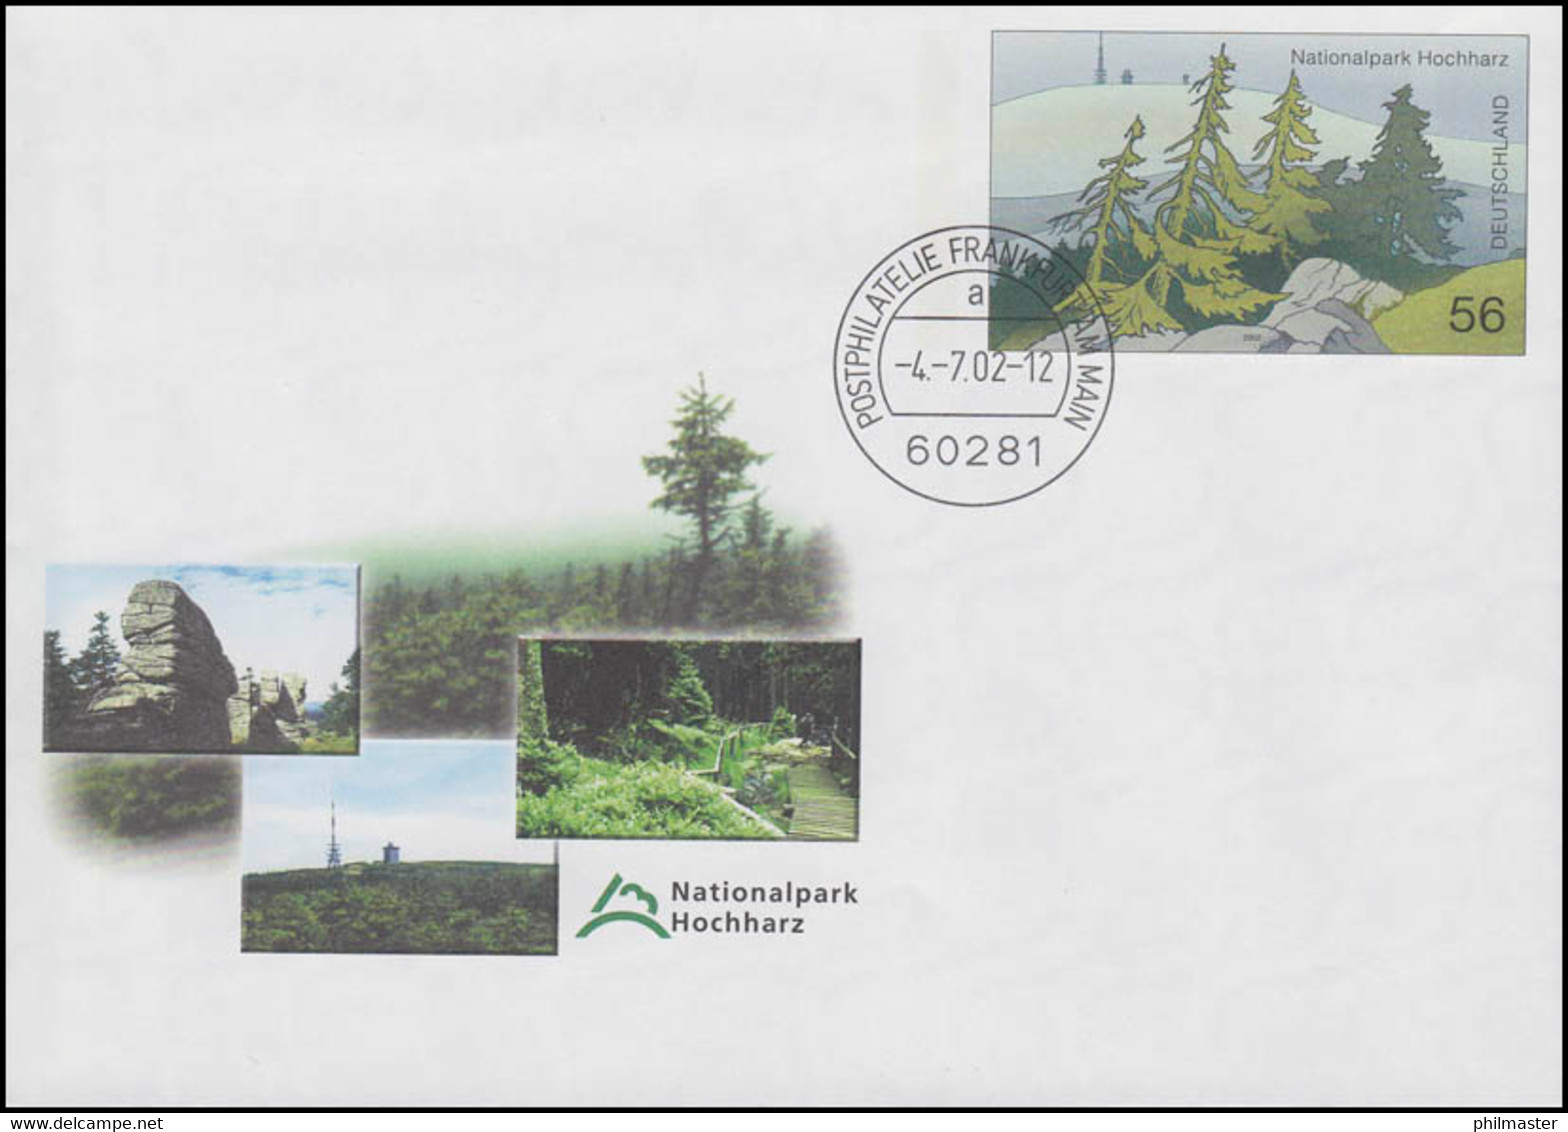 USo 39 Nationalpark Hochharz 2002, VS-O Frankfurt 4.7.2002 - Briefomslagen - Ongebruikt